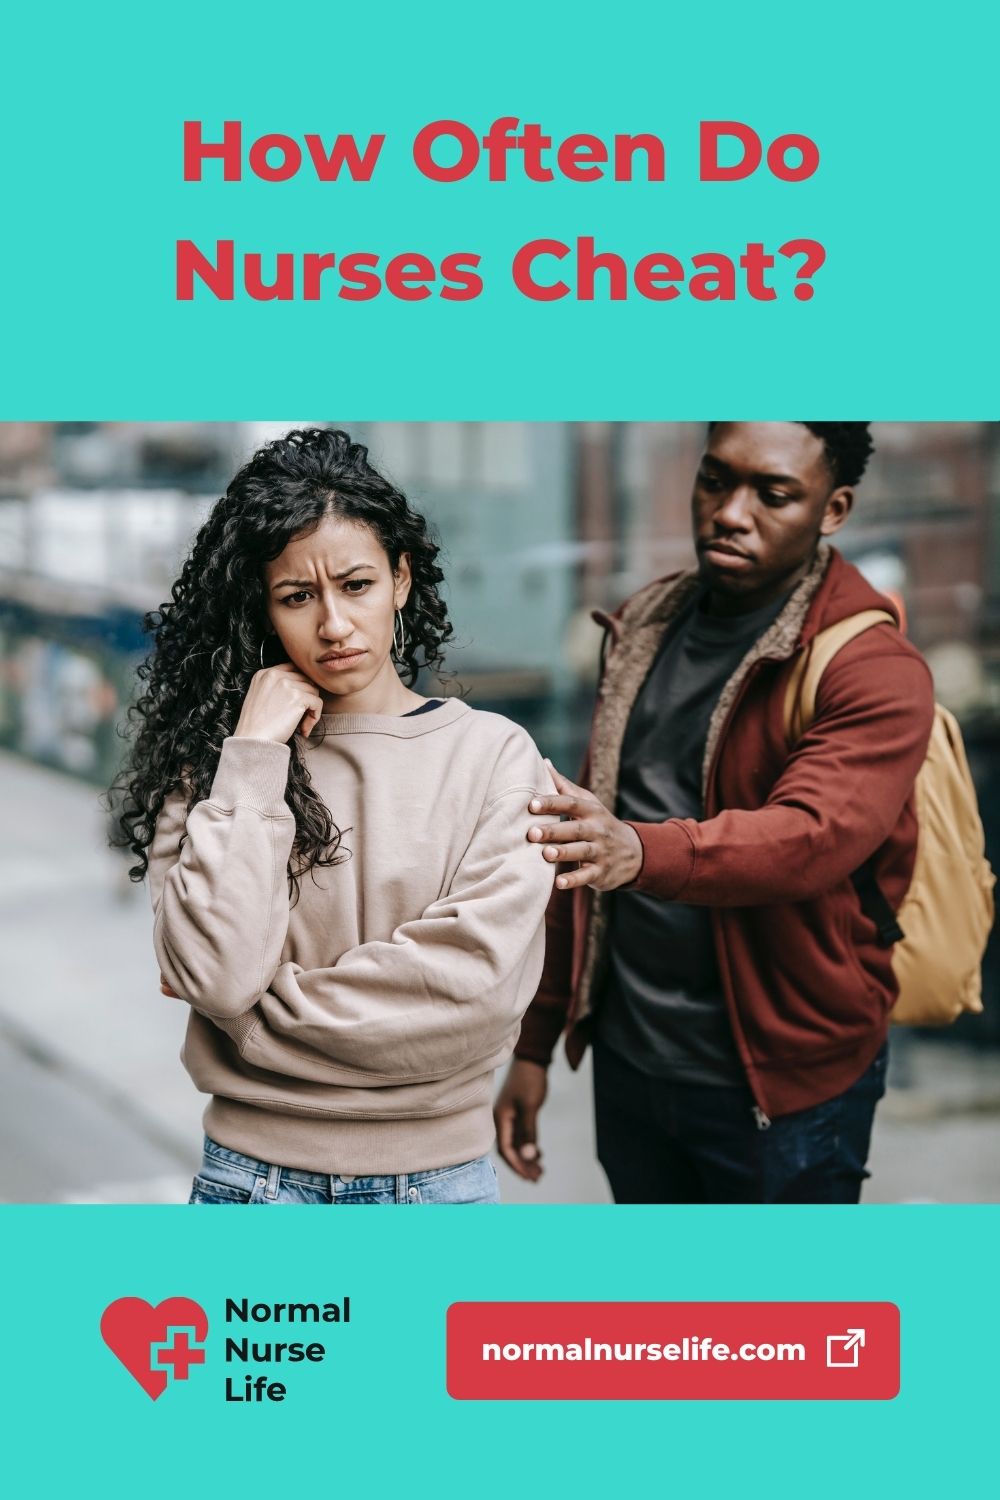 How often do nurses cheat at work